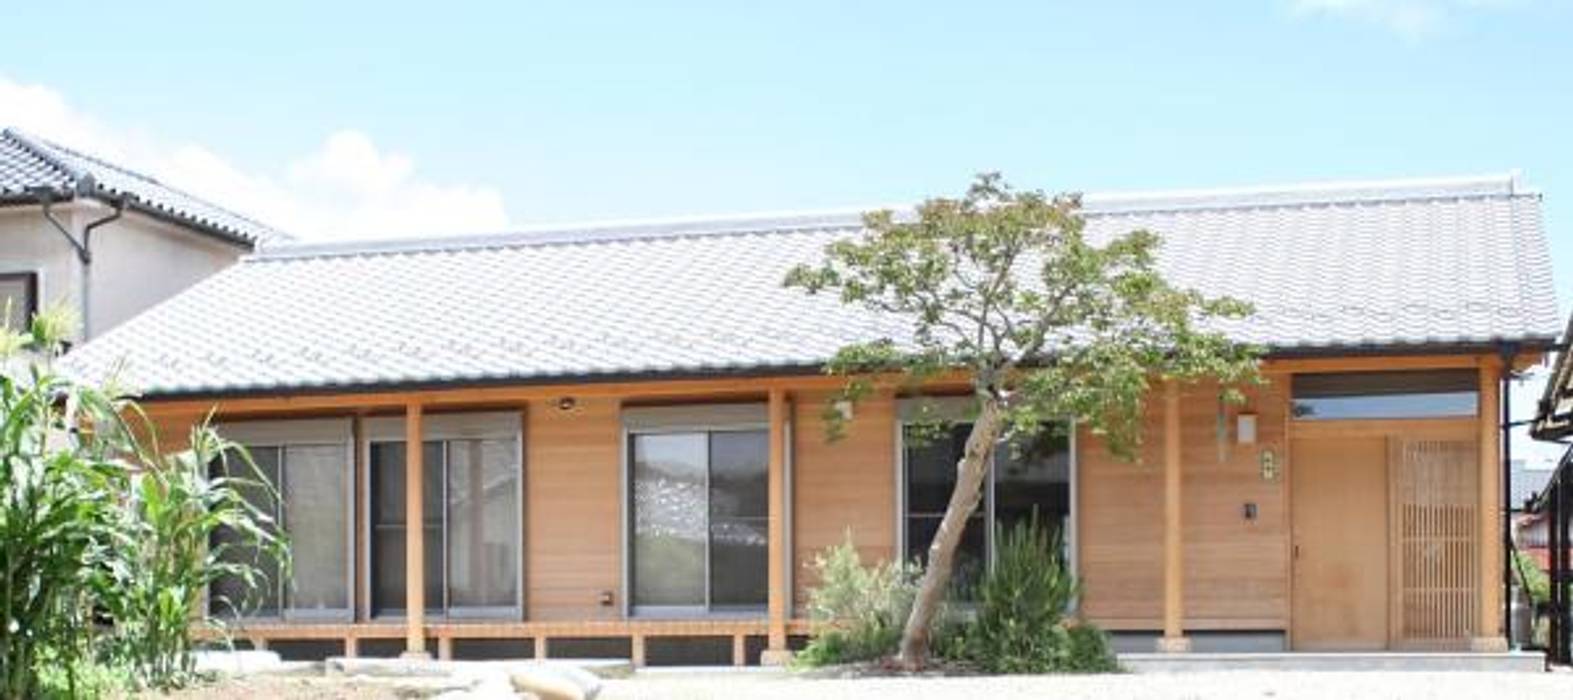 今泉の平屋の家, 永井政光建築設計事務所 永井政光建築設計事務所 Wooden houses